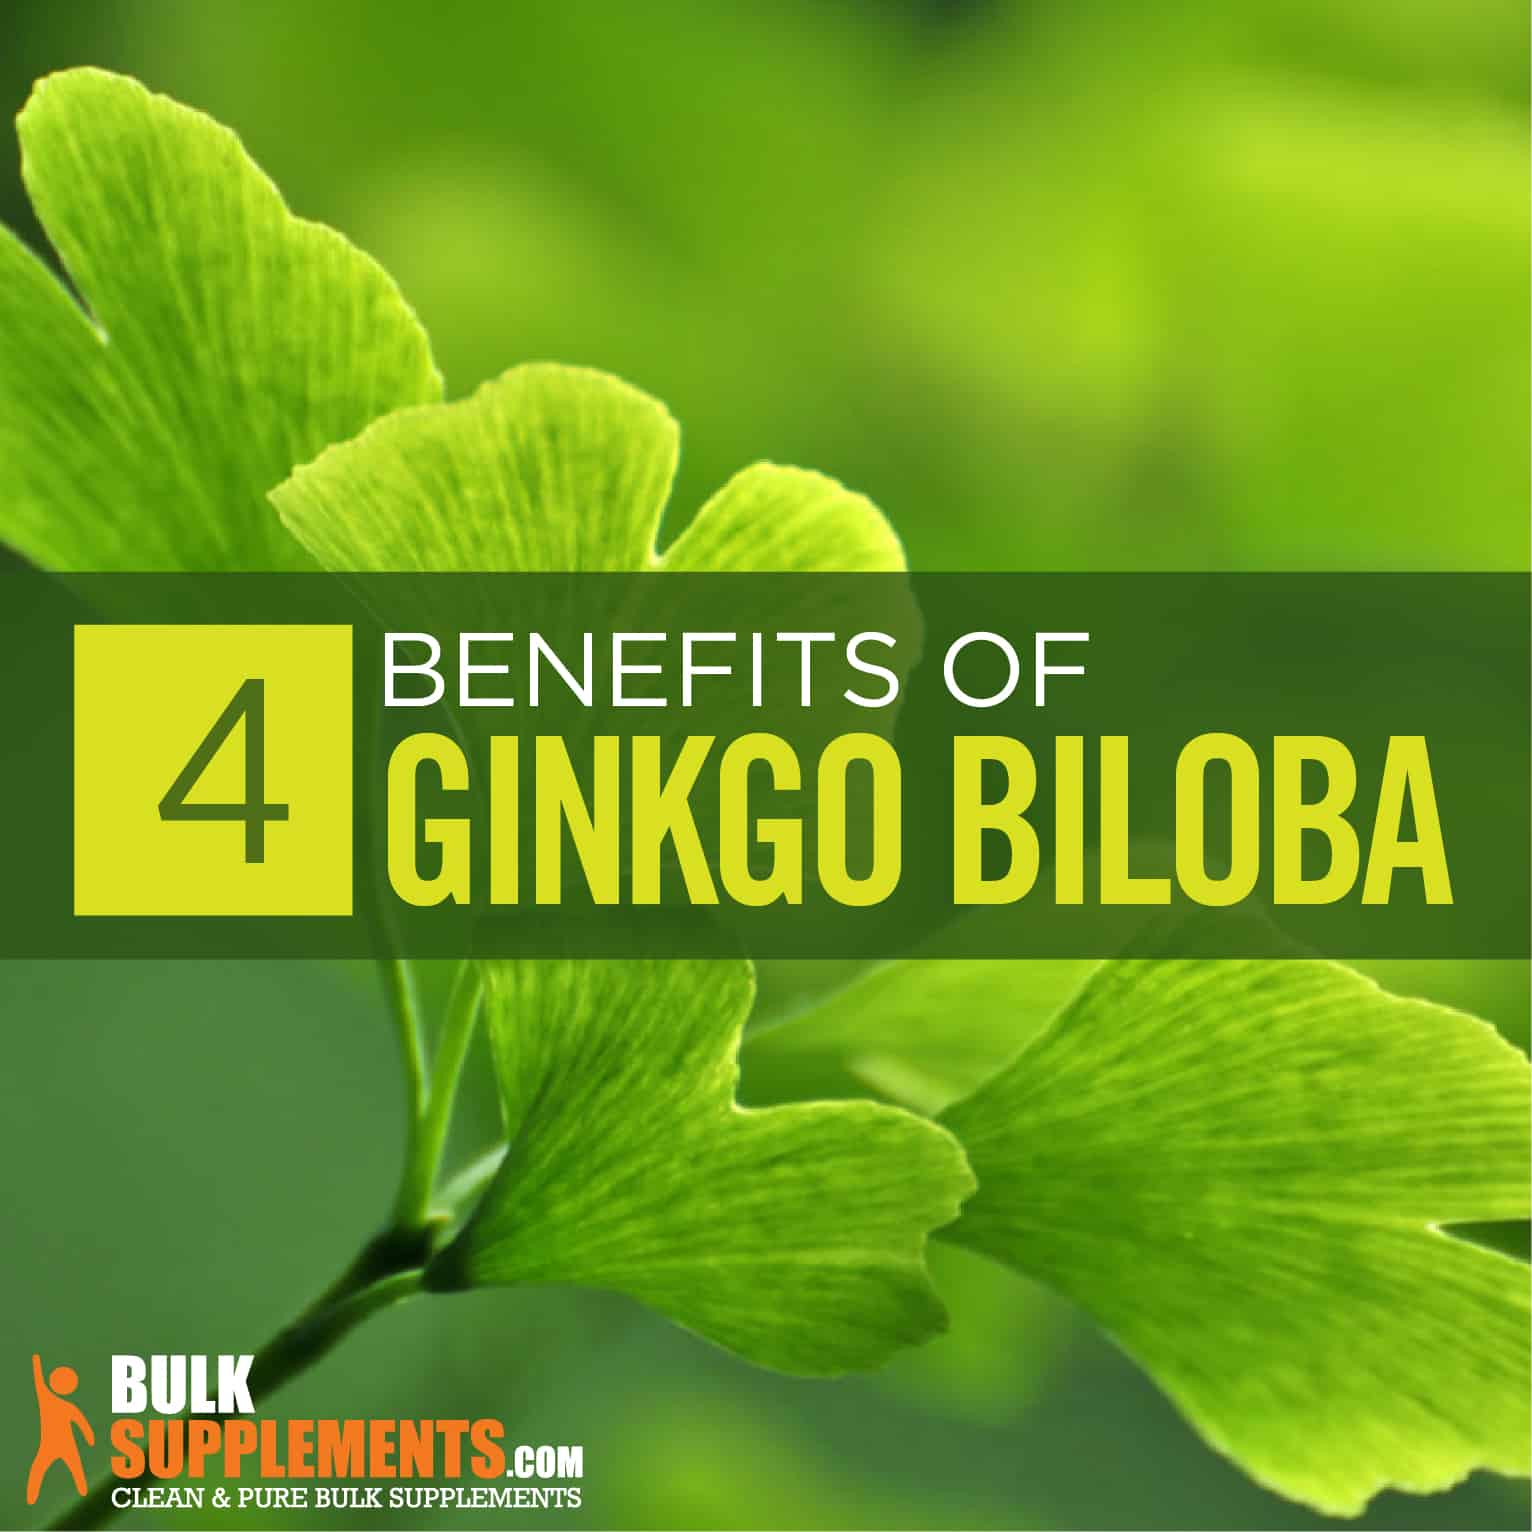 Ginkgo biloba benefits